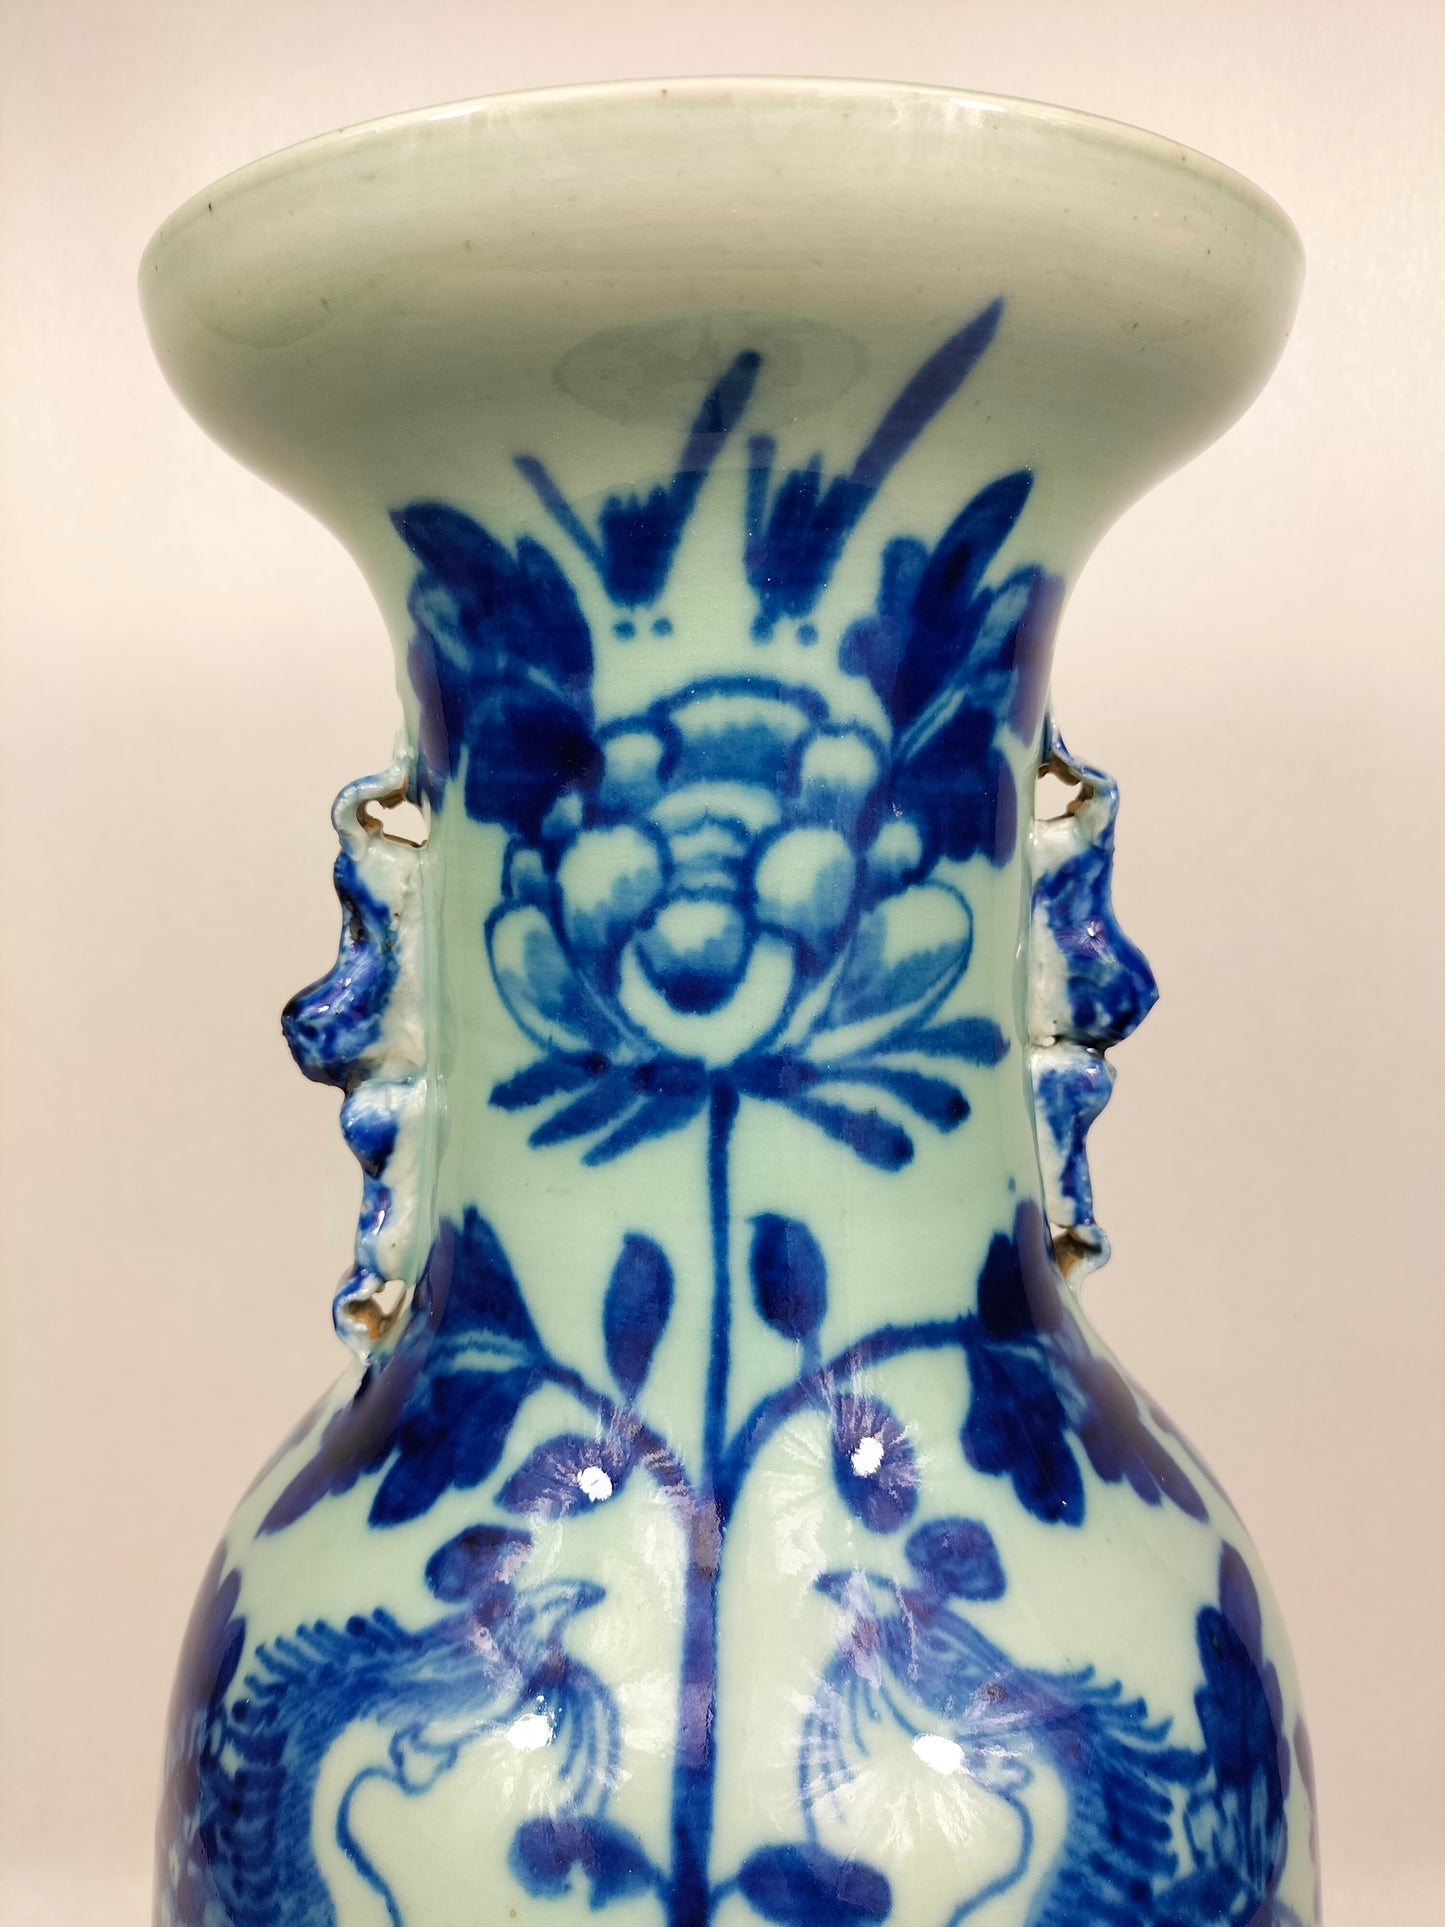 大型仿古中国青瓷彩色花瓶//清朝 - 19 世纪